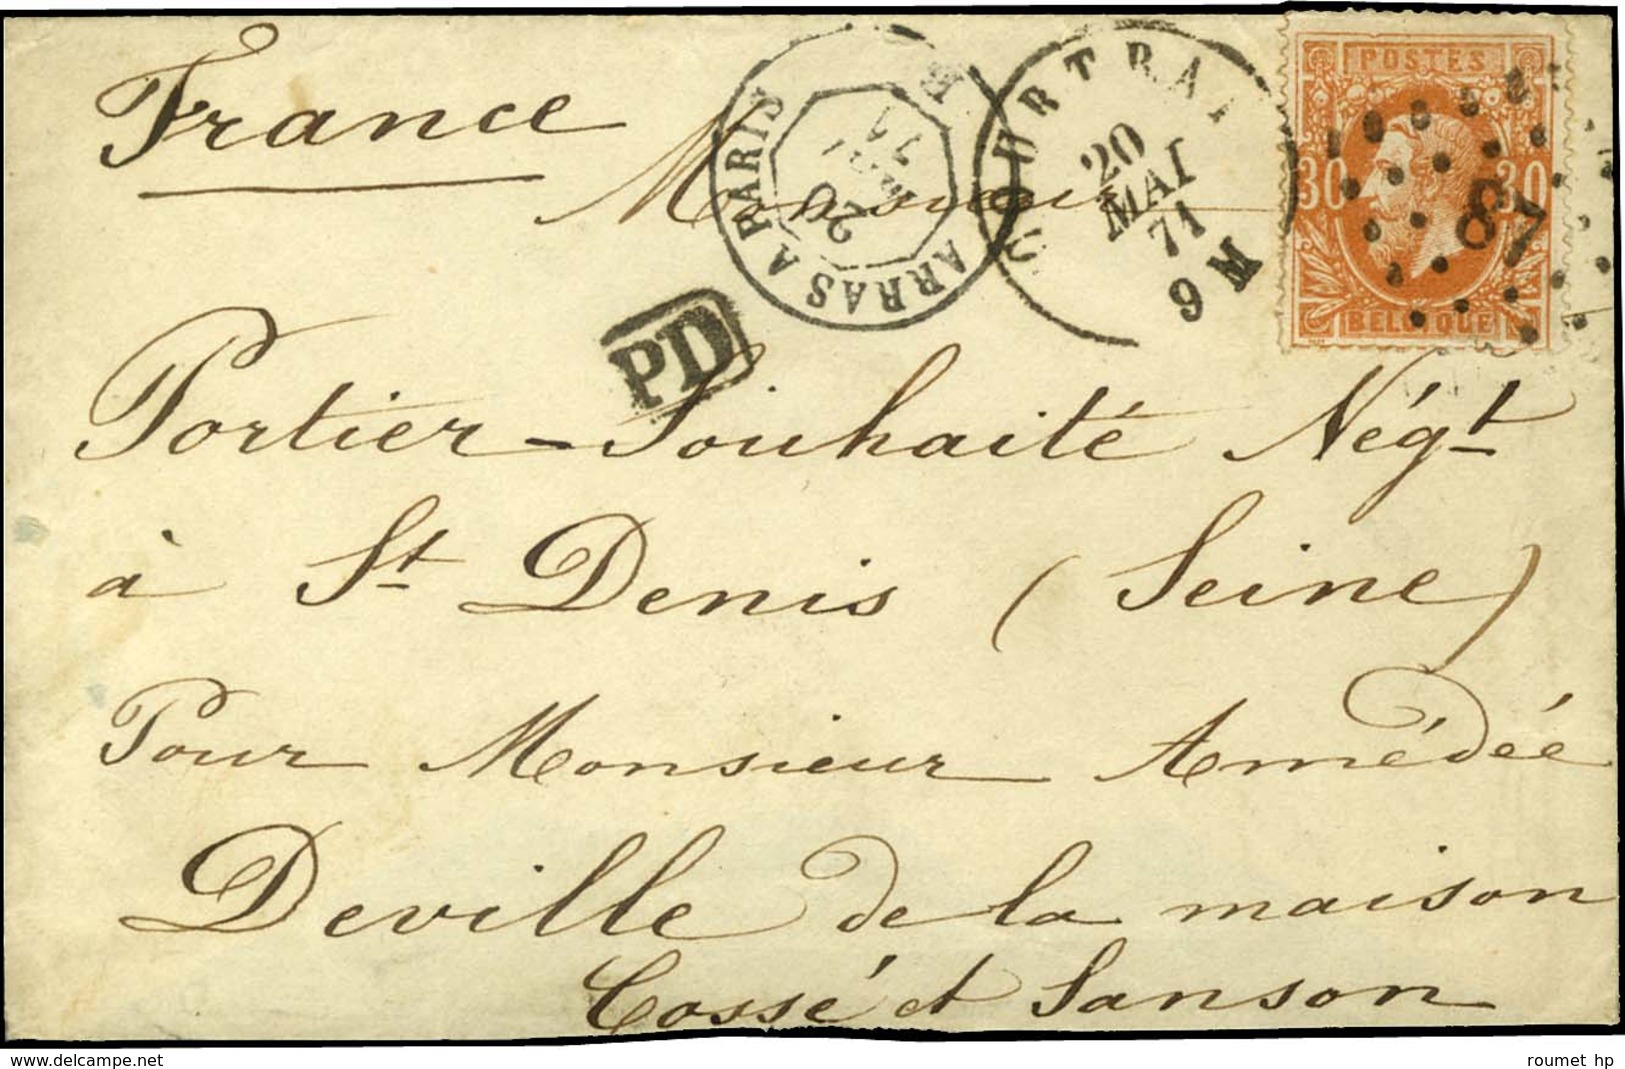 Lettre Affranchie De Courtrai (Belgique) 20 MAI 71 Sur Lettre Pour M. Portier à St Denis, Pour M. Deville, Paris, Sans C - War 1870